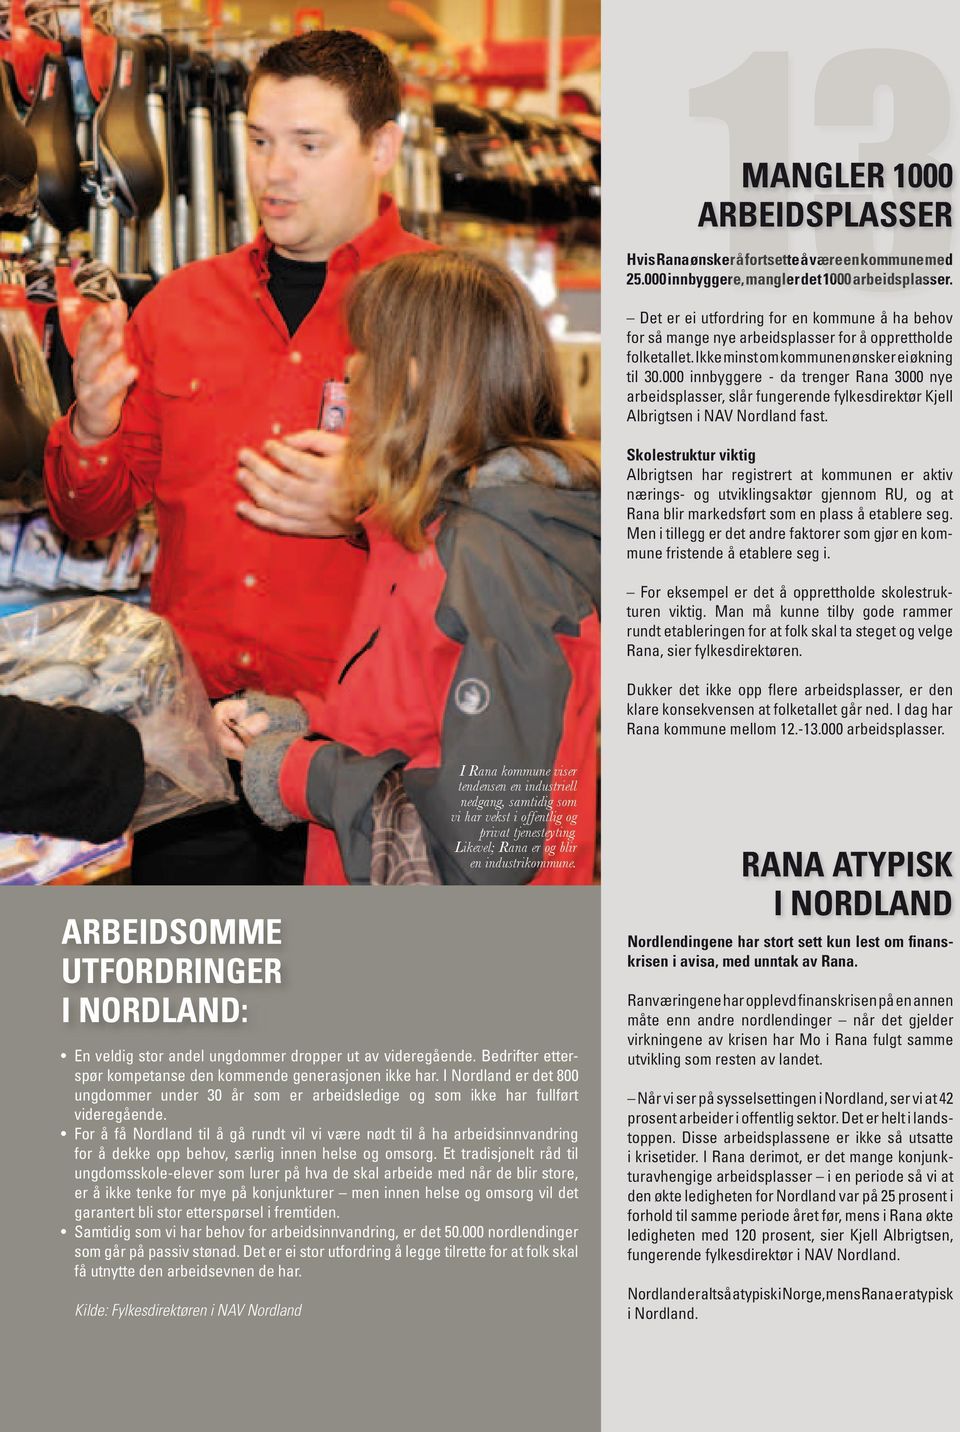 000 innbyggere - da trenger Rana 3000 nye arbeidsplasser, slår fungerende fylkesdirektør Kjell Albrigtsen i NAV Nordland fast.